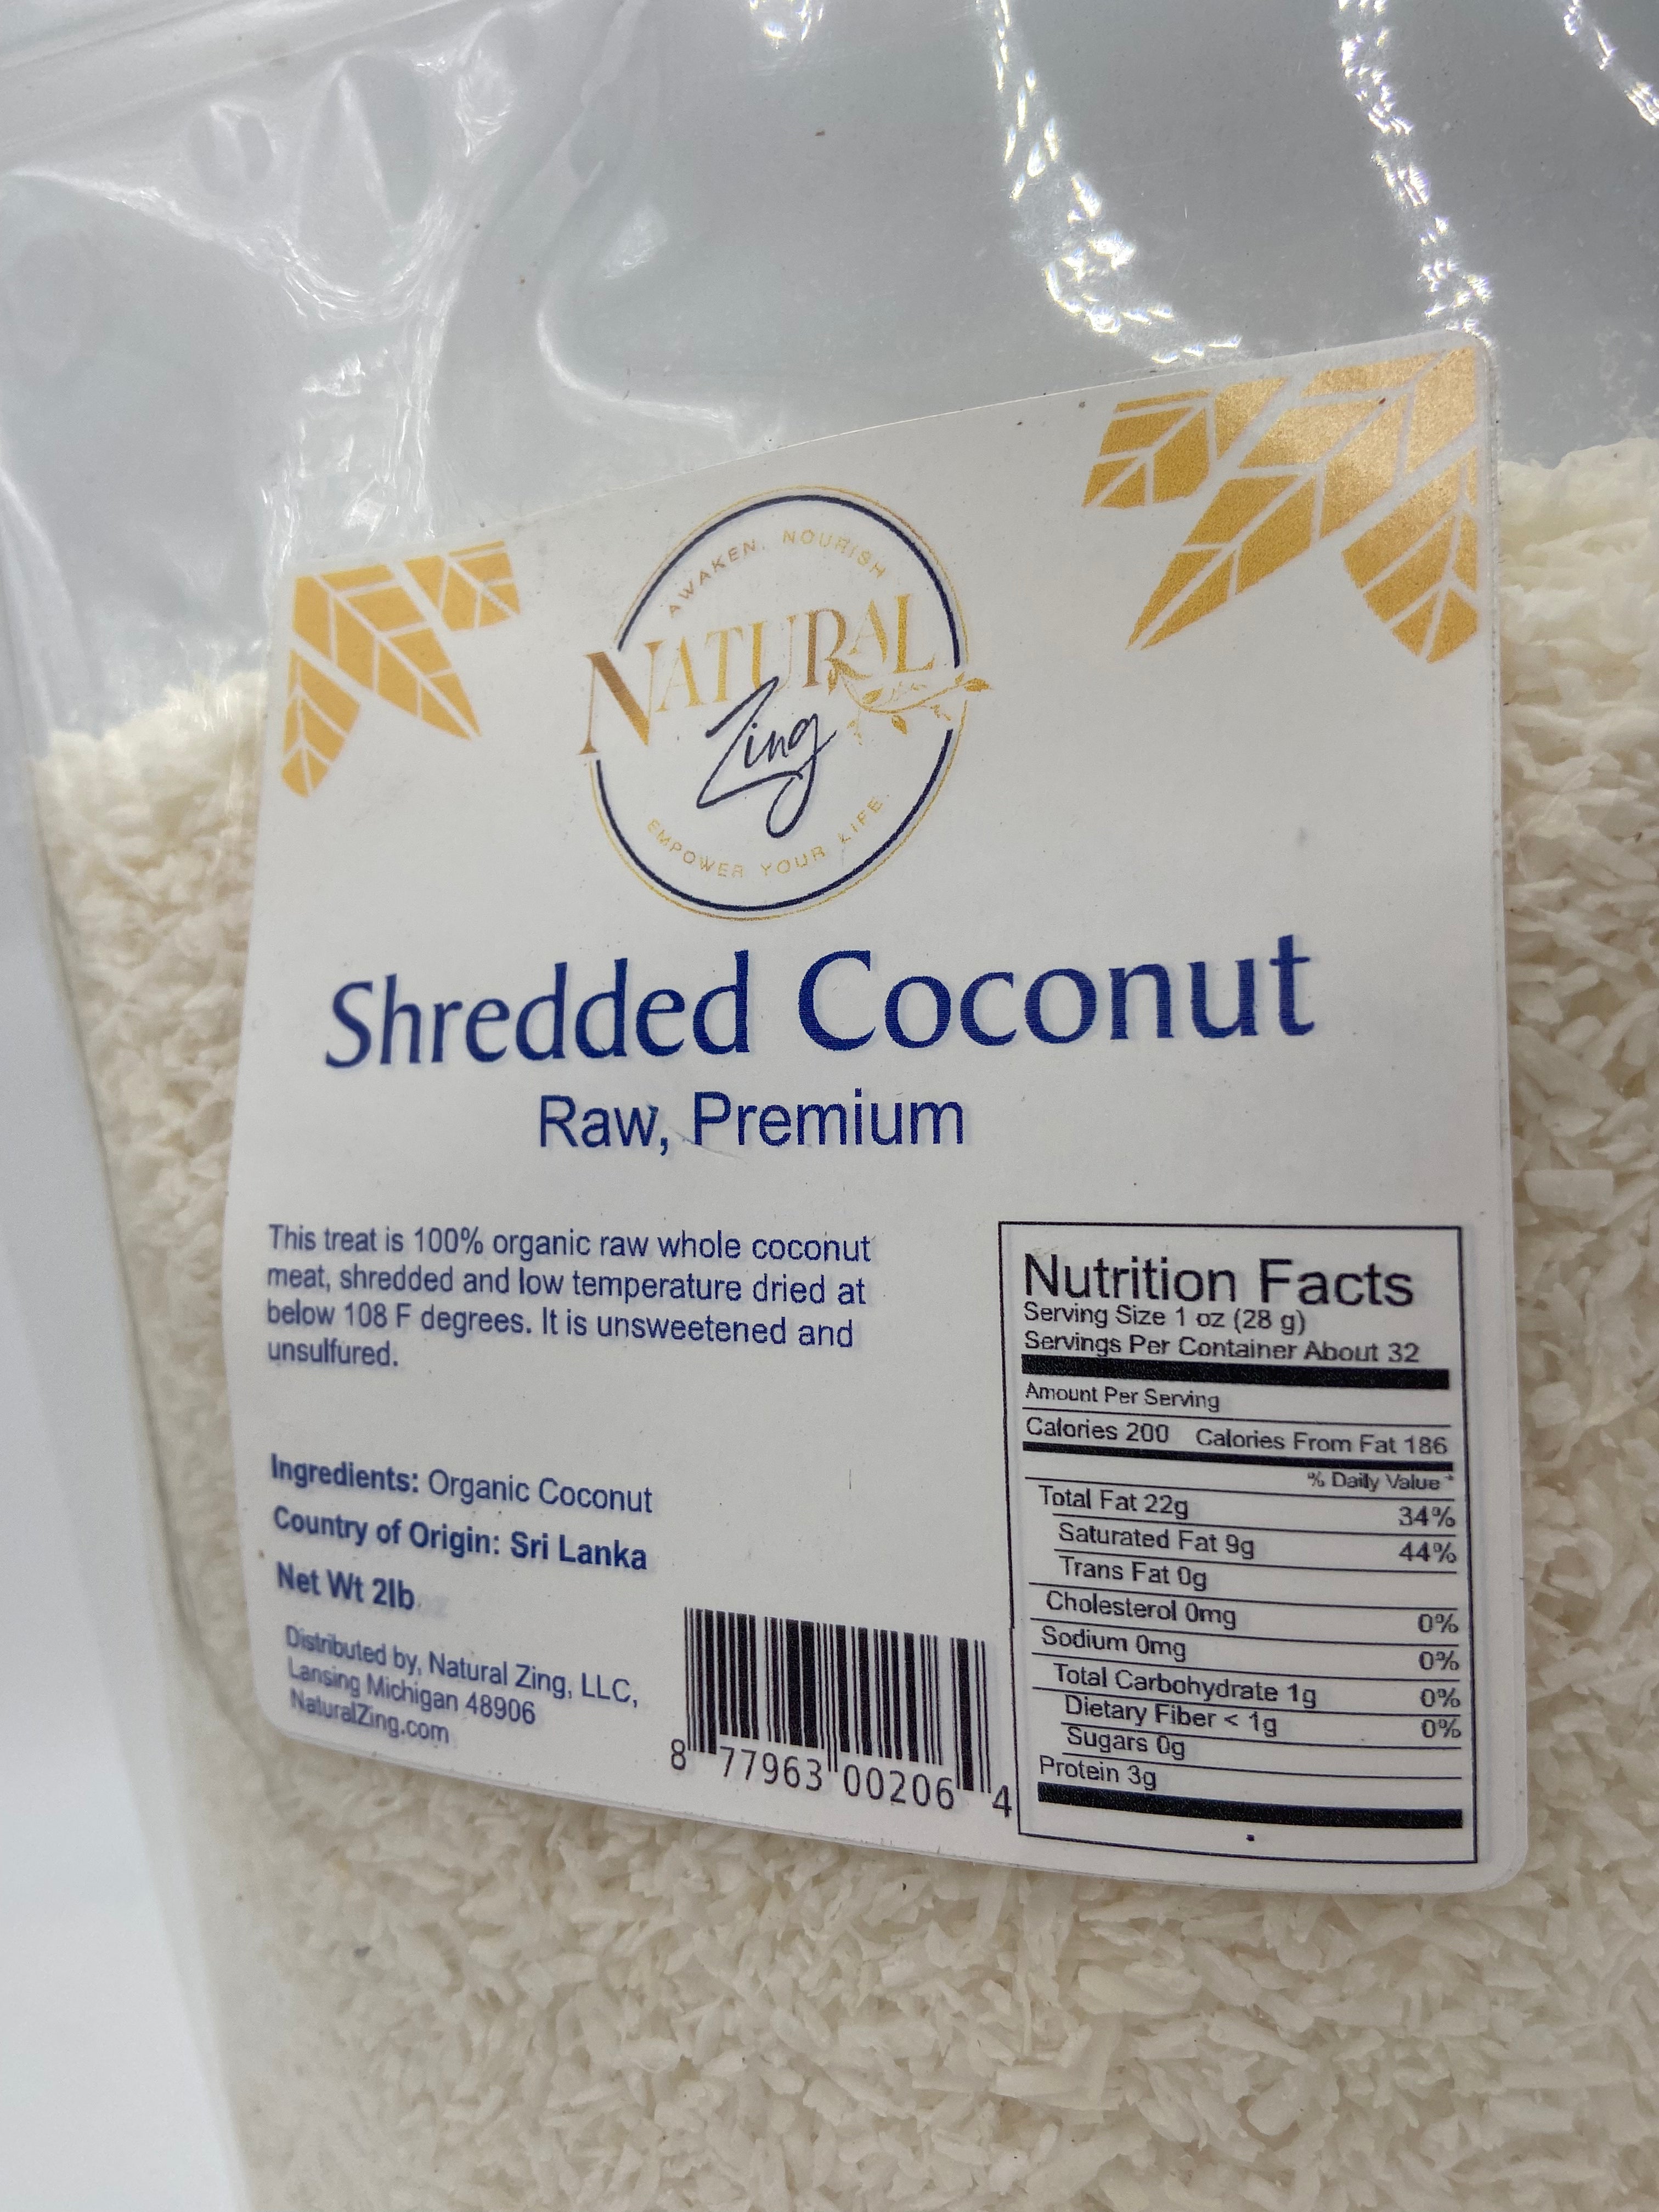 Shredded Coconut 2 lb